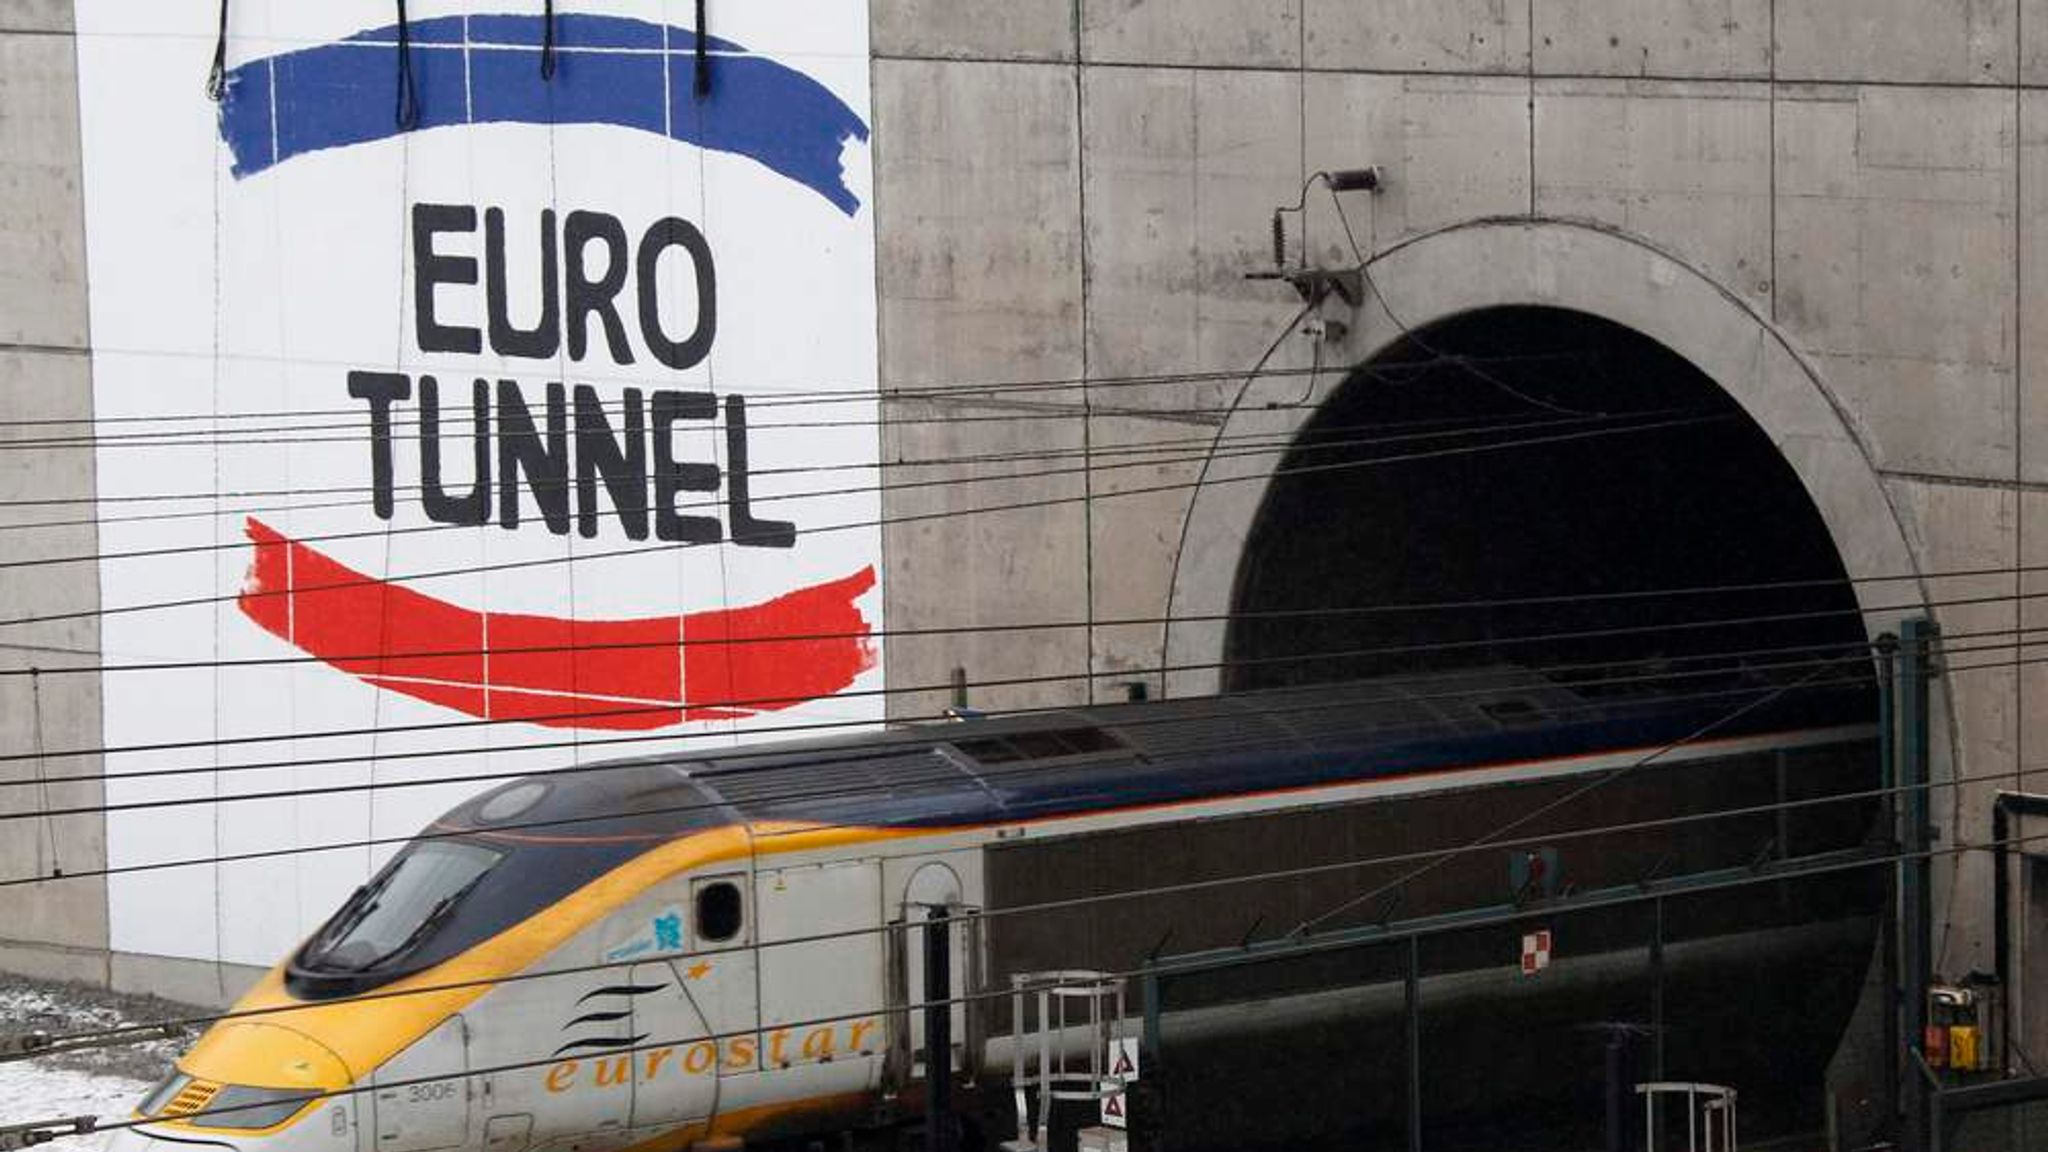 туннель между англией и францией